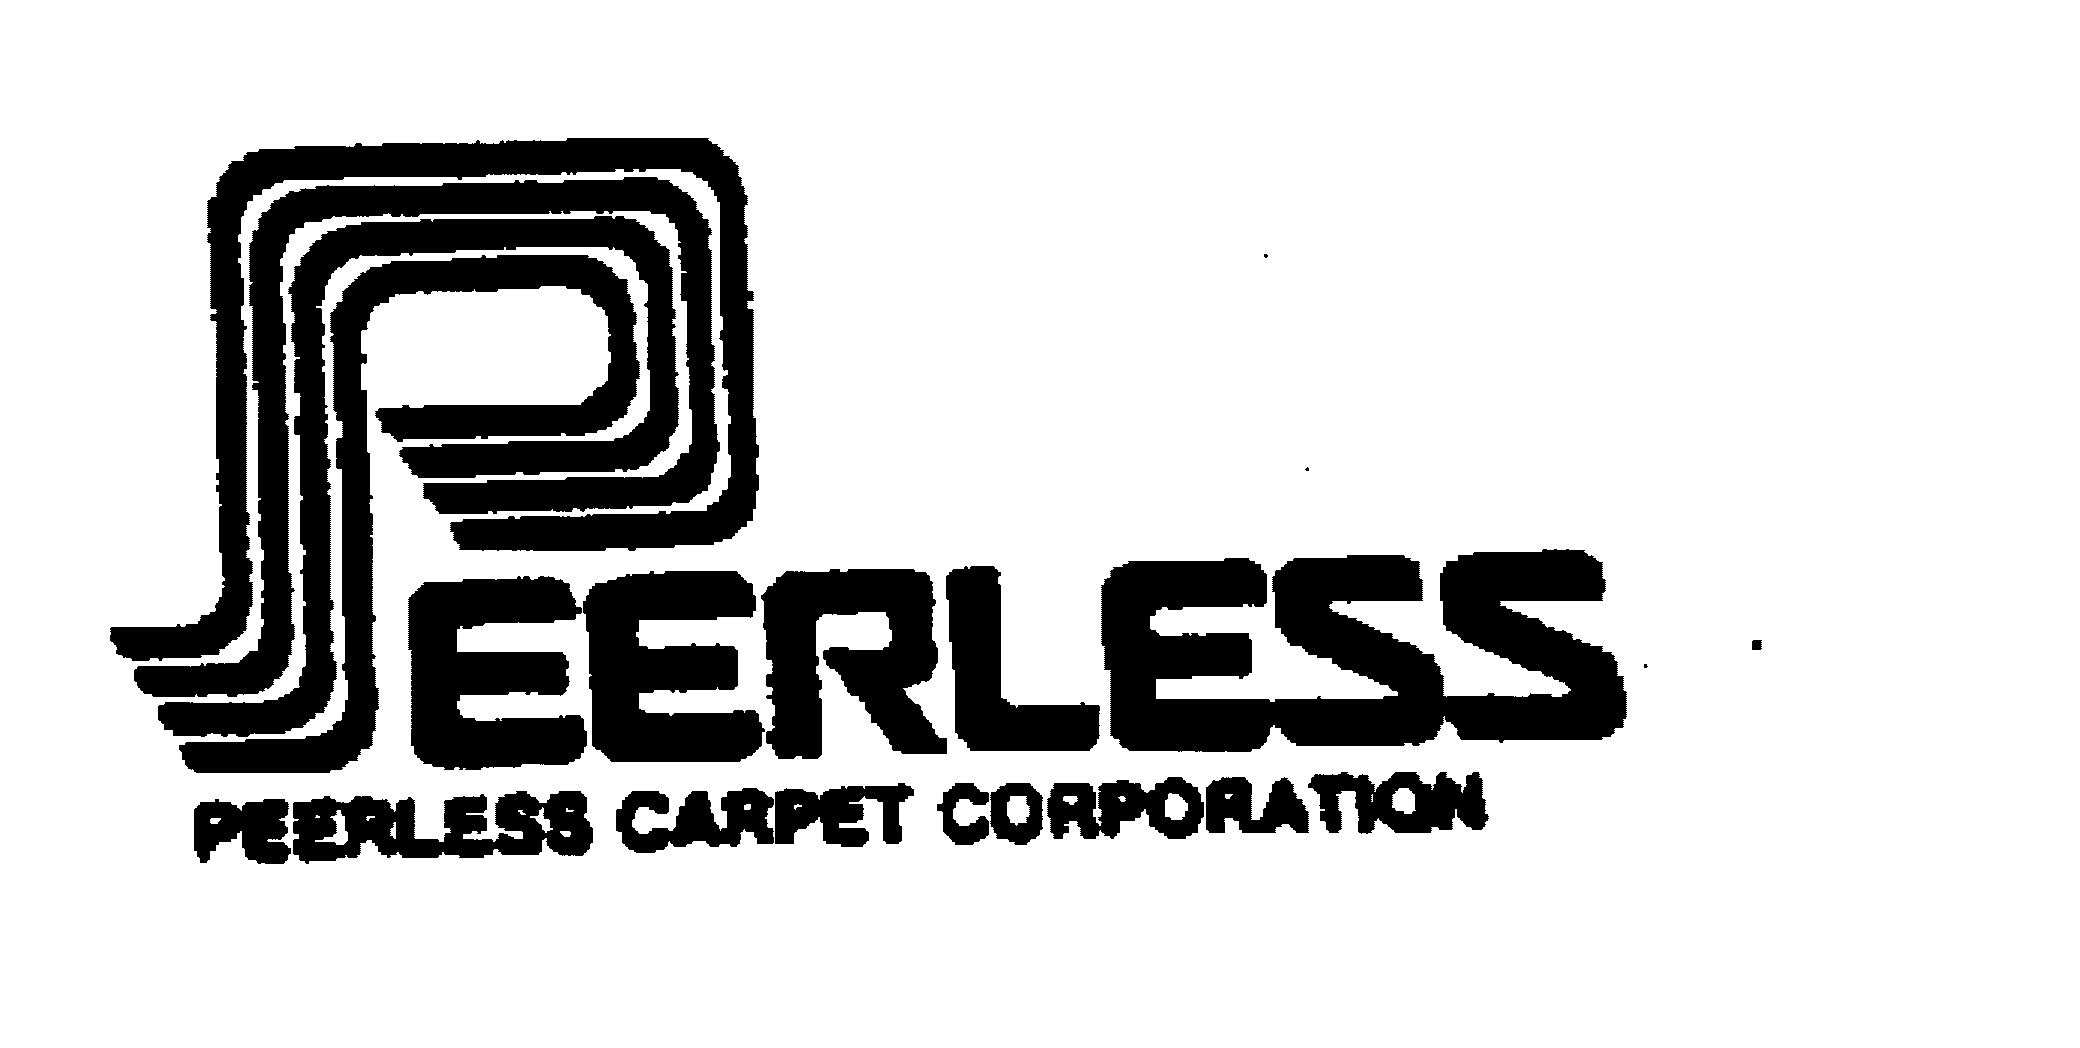 PEERLESS PEERLESS CARPET CORPORATION